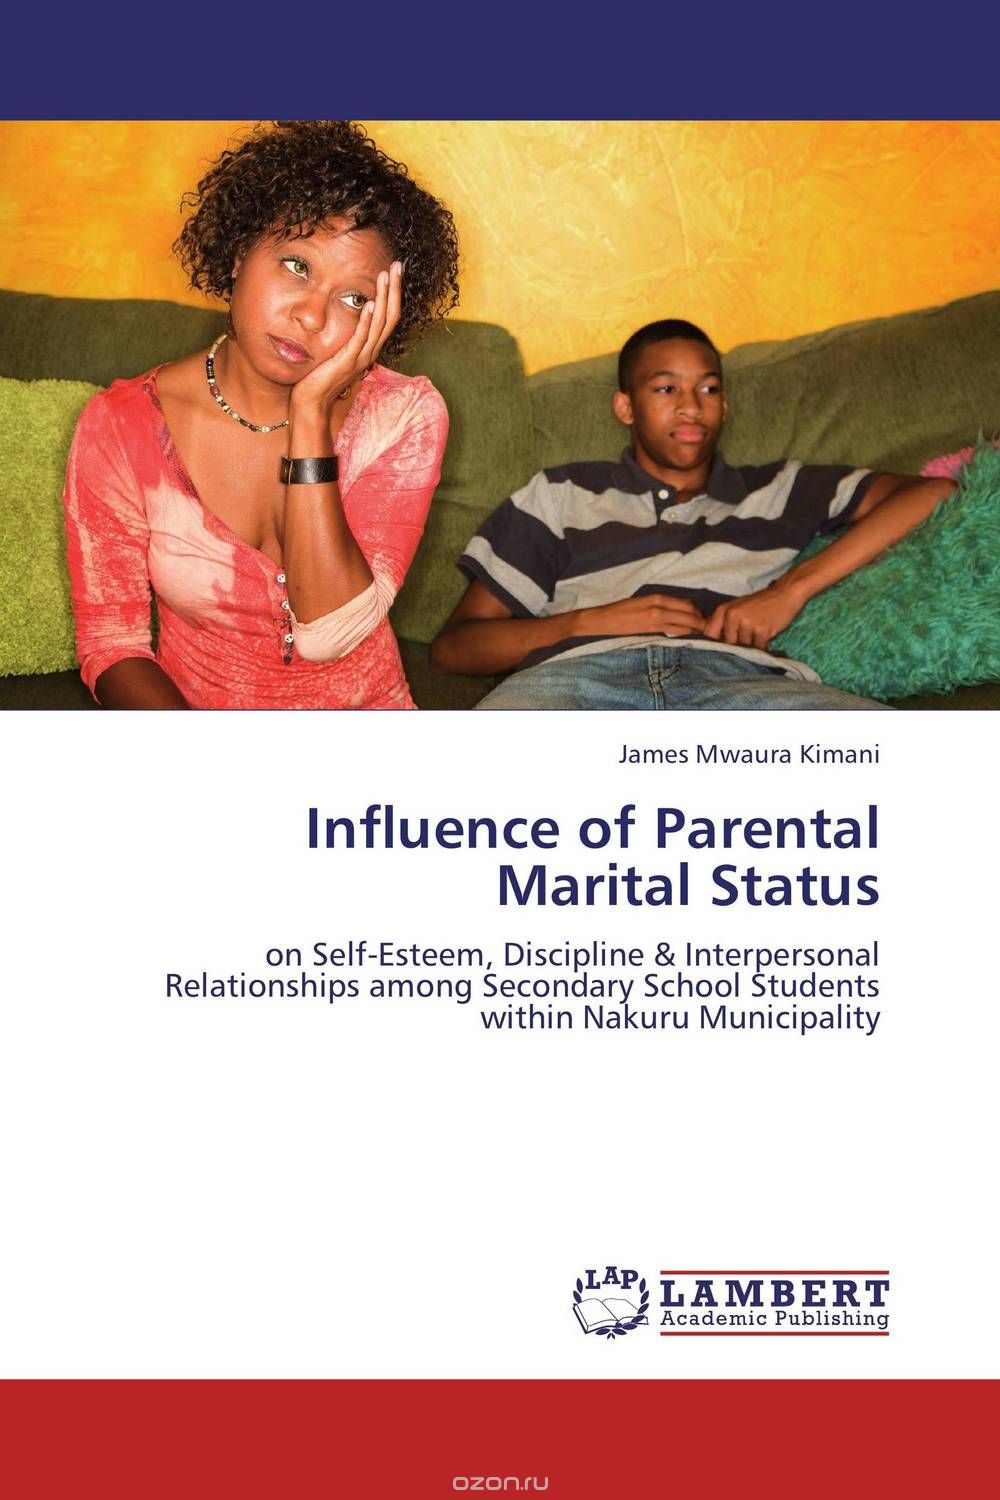 Скачать книгу "Influence of Parental Marital Status"